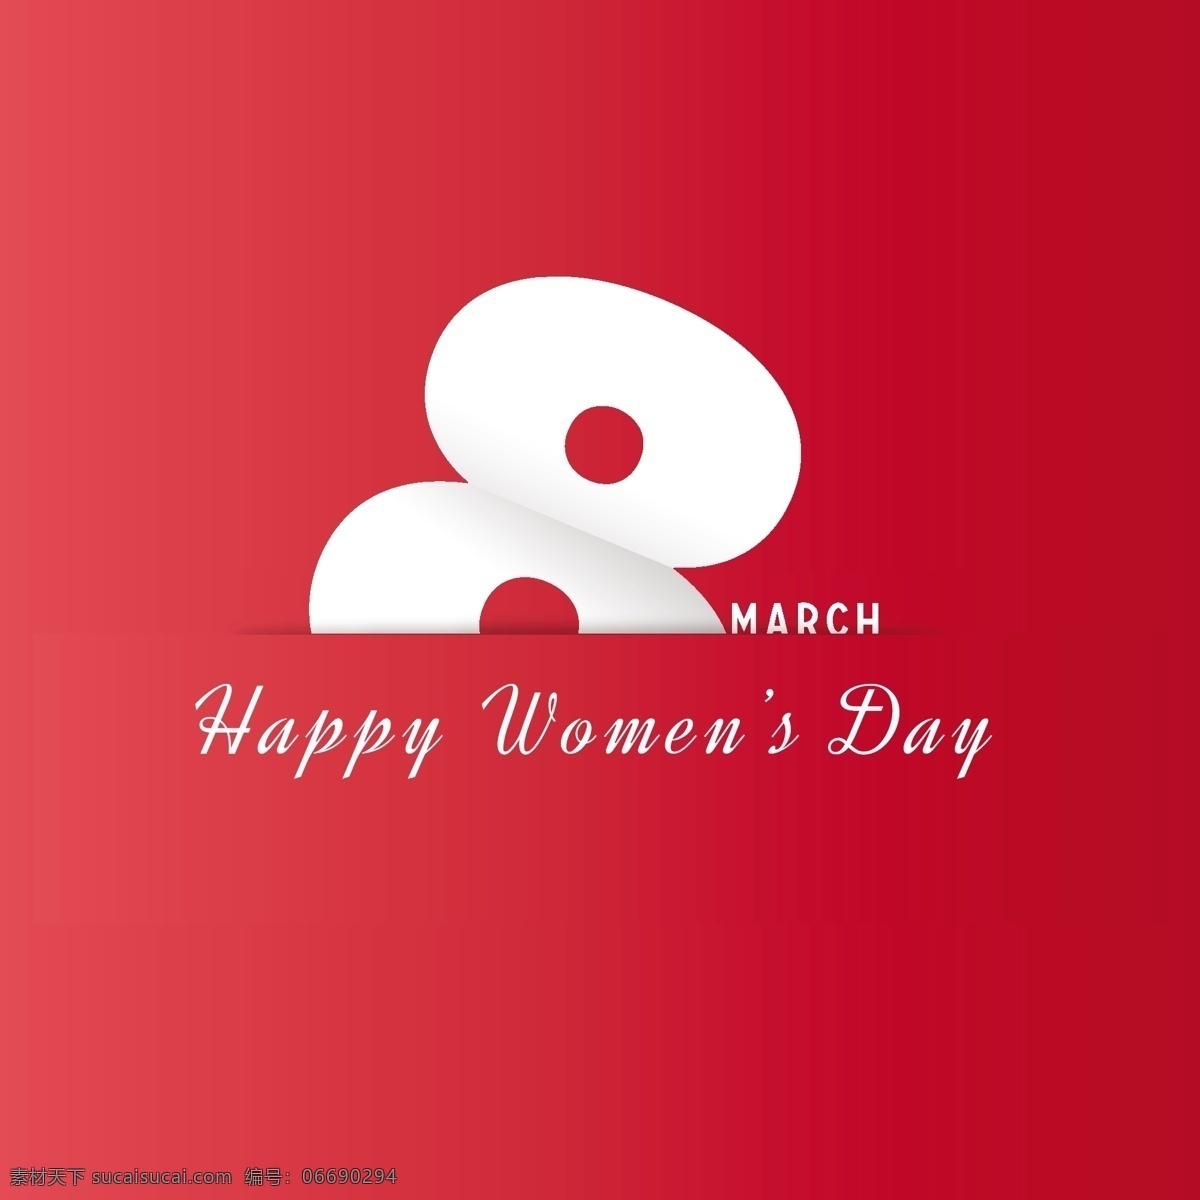 国际妇女日 红色背景 背景 庆祝 假日 女性 自由 国际 游行 妇女 平等 权利